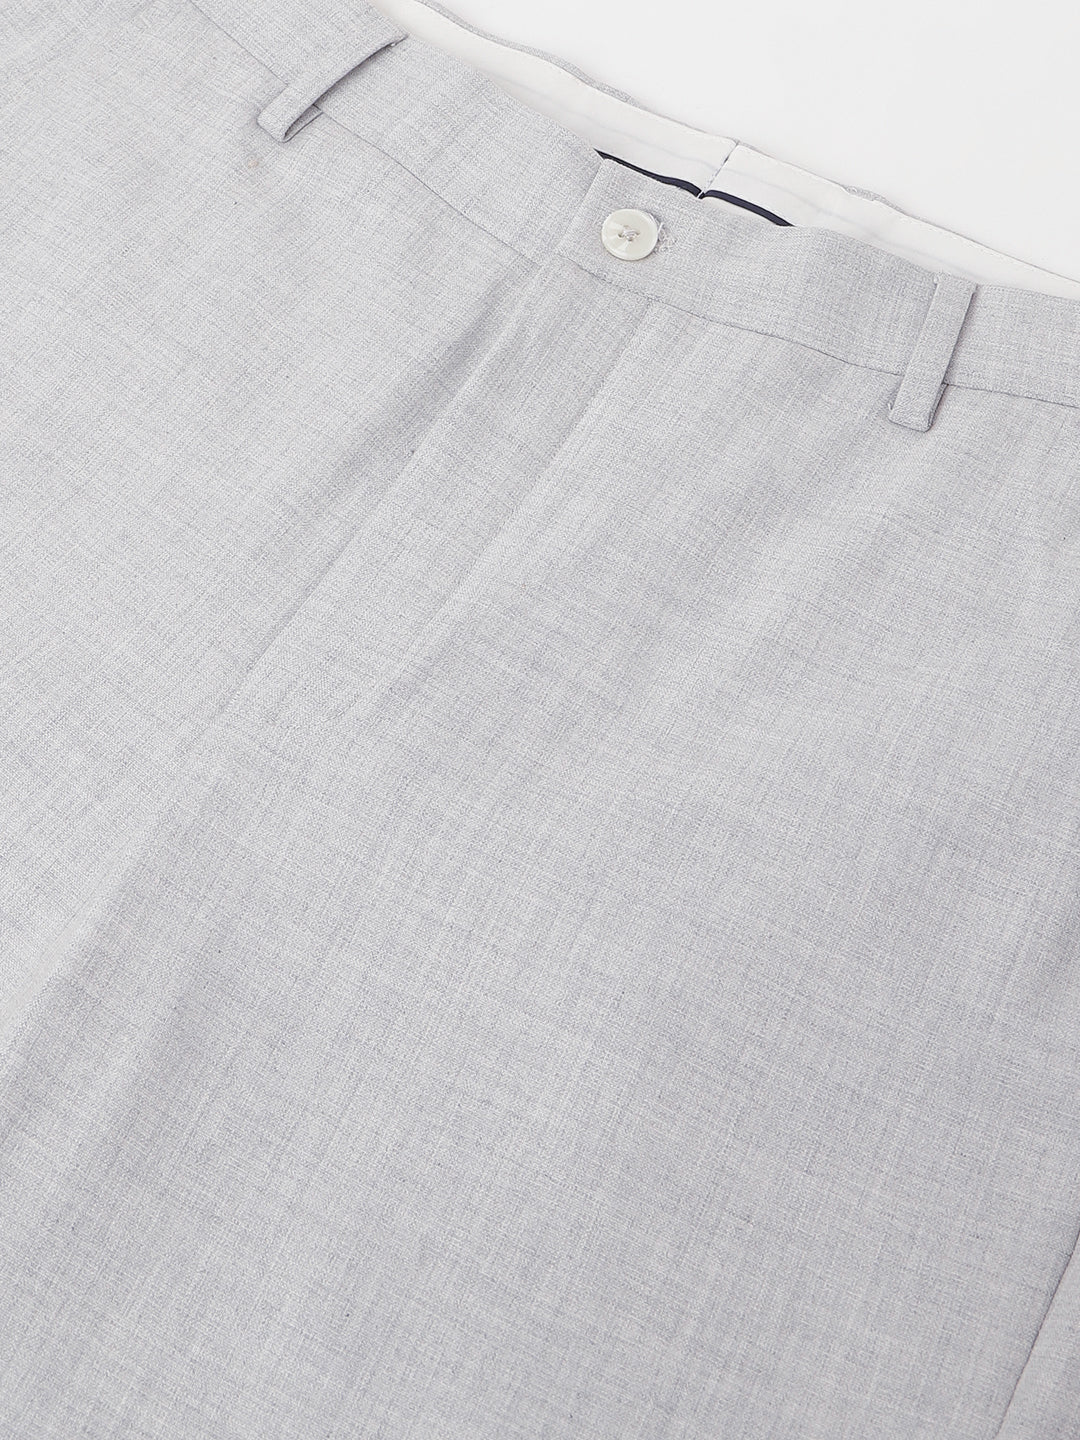 4-Way Stretch Formal Trousers in Lunar Grey - Slim Fit